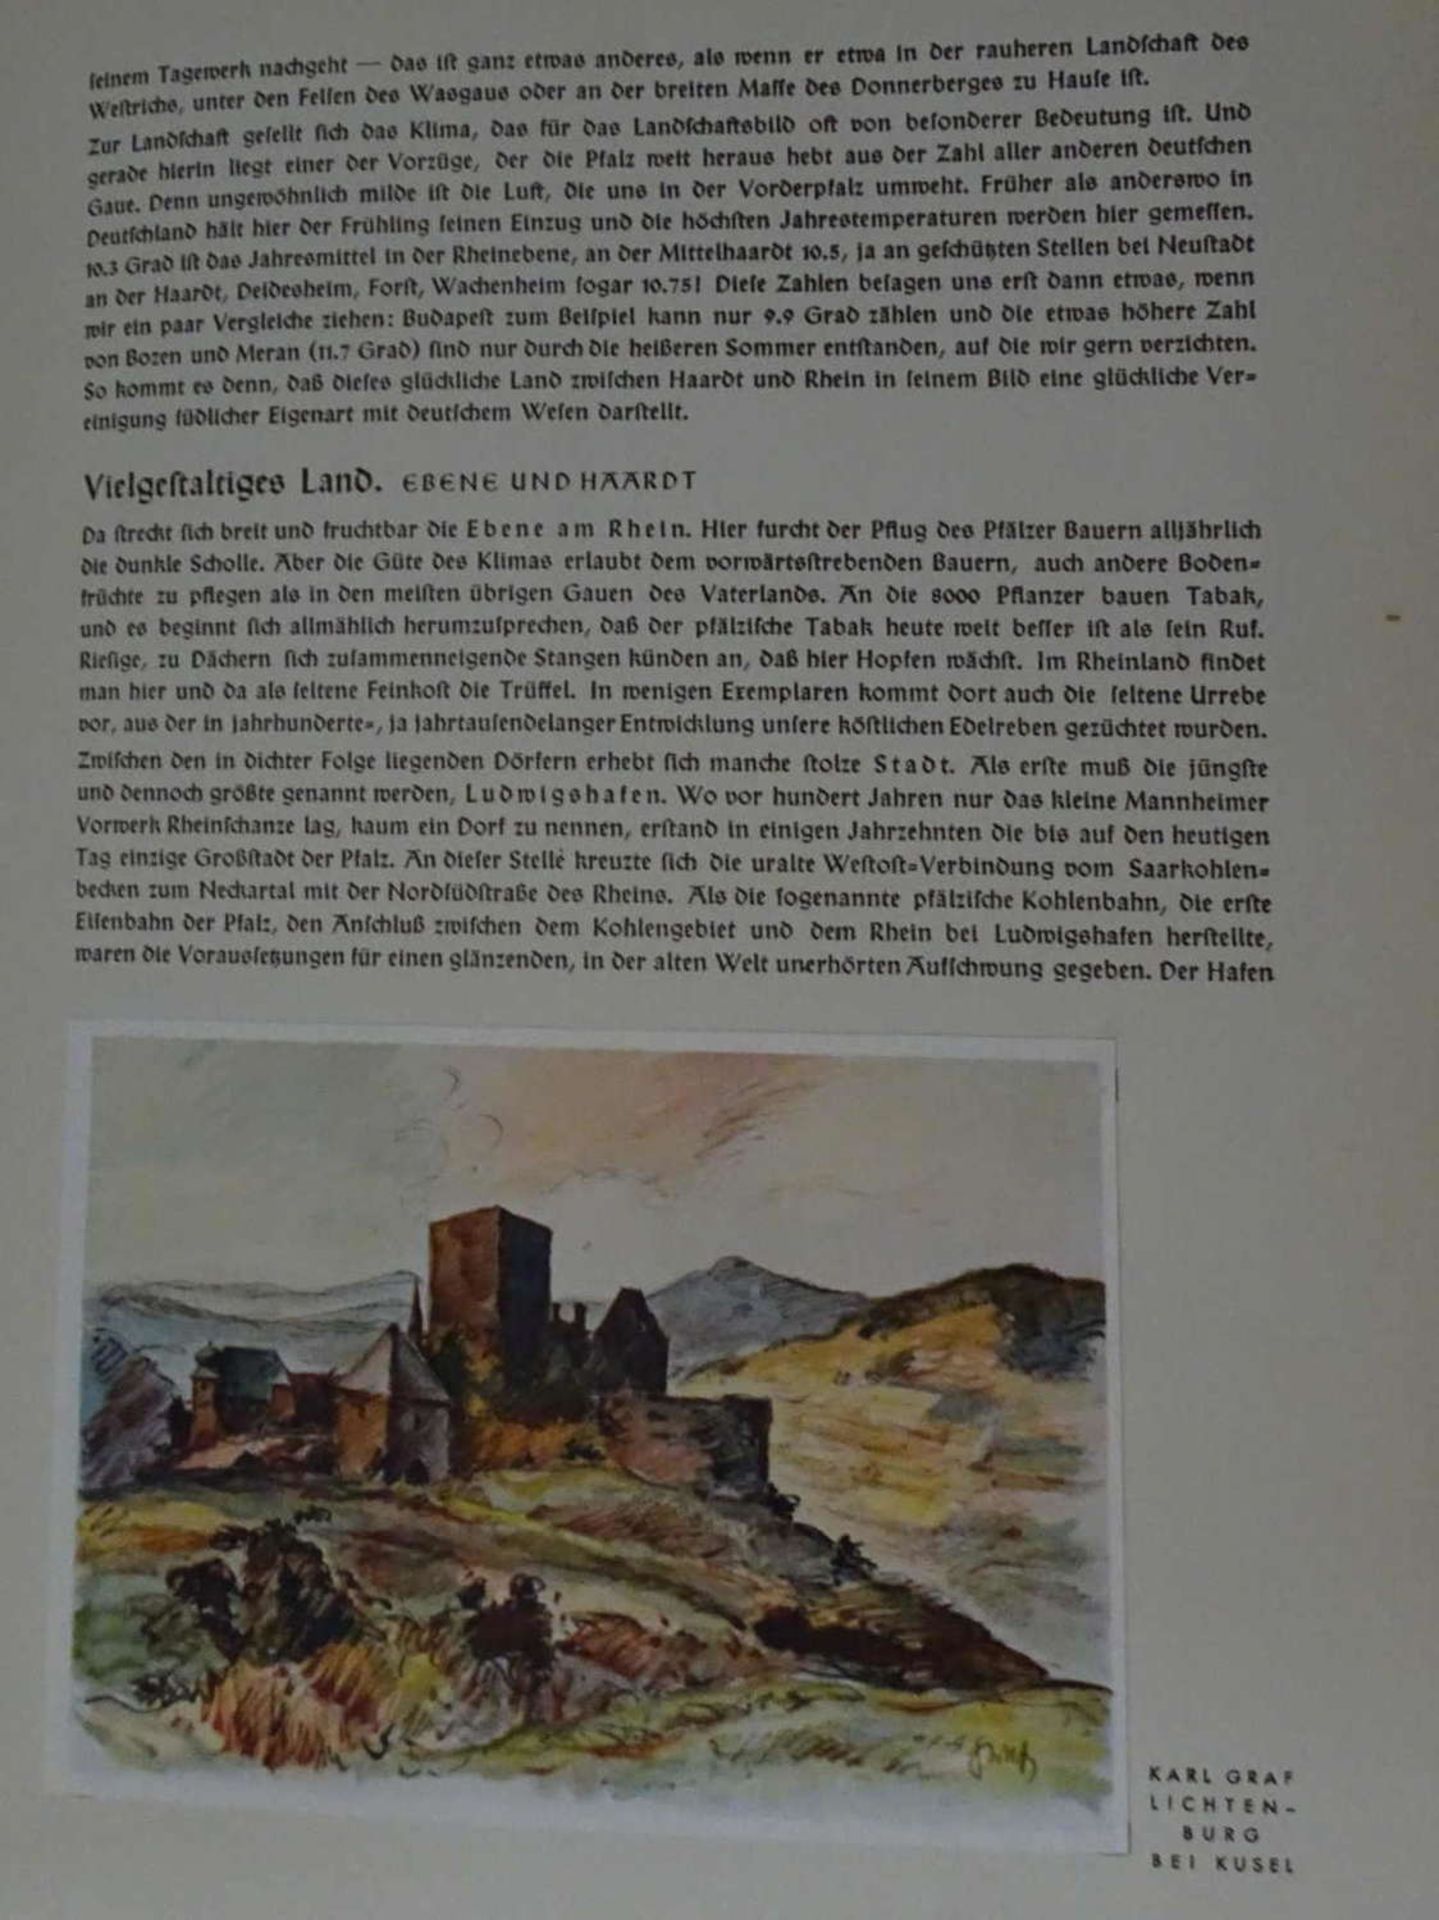 Winterhilfswerk - WHW - Amt für Volkswohlfahrt,:Das Westmark Buch, Ehrengabe des Winterhilfswerkes - Bild 3 aus 4